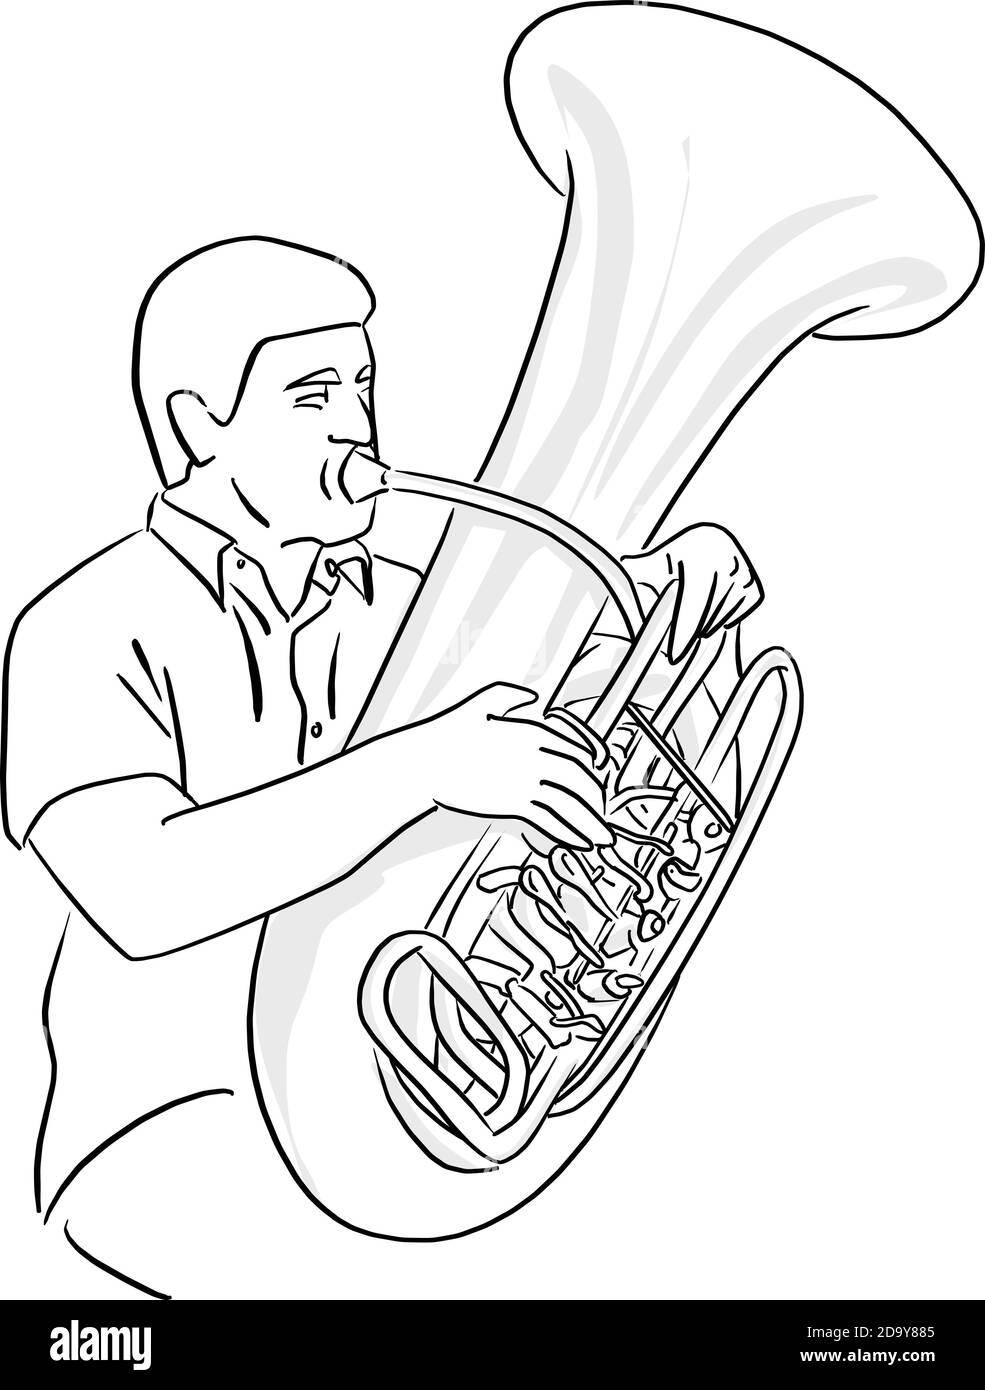 Mann spielen Tuba Vektor Illustration Skizze Doodle Hand gezeichnet mit Schwarze Linien auf weißem Hintergrund isoliert Stock Vektor